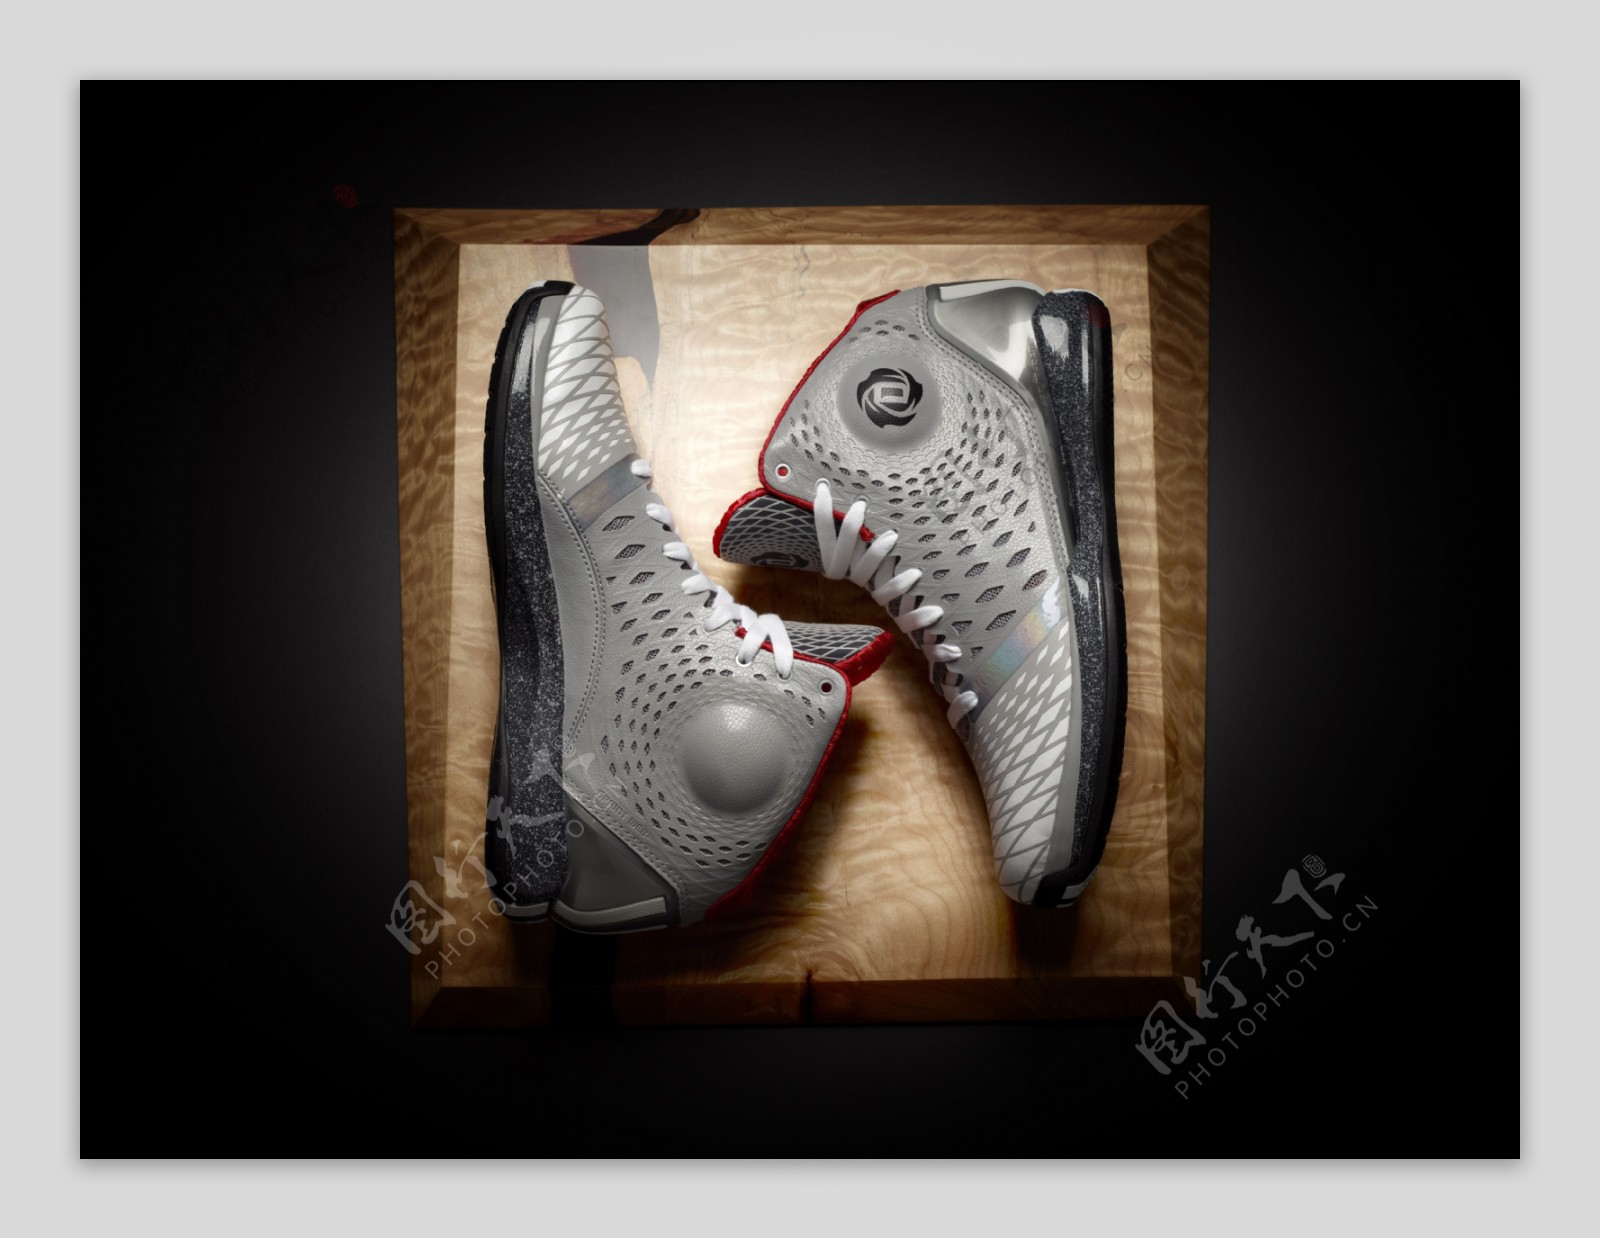 adidas篮球鞋广告宣传照片图片